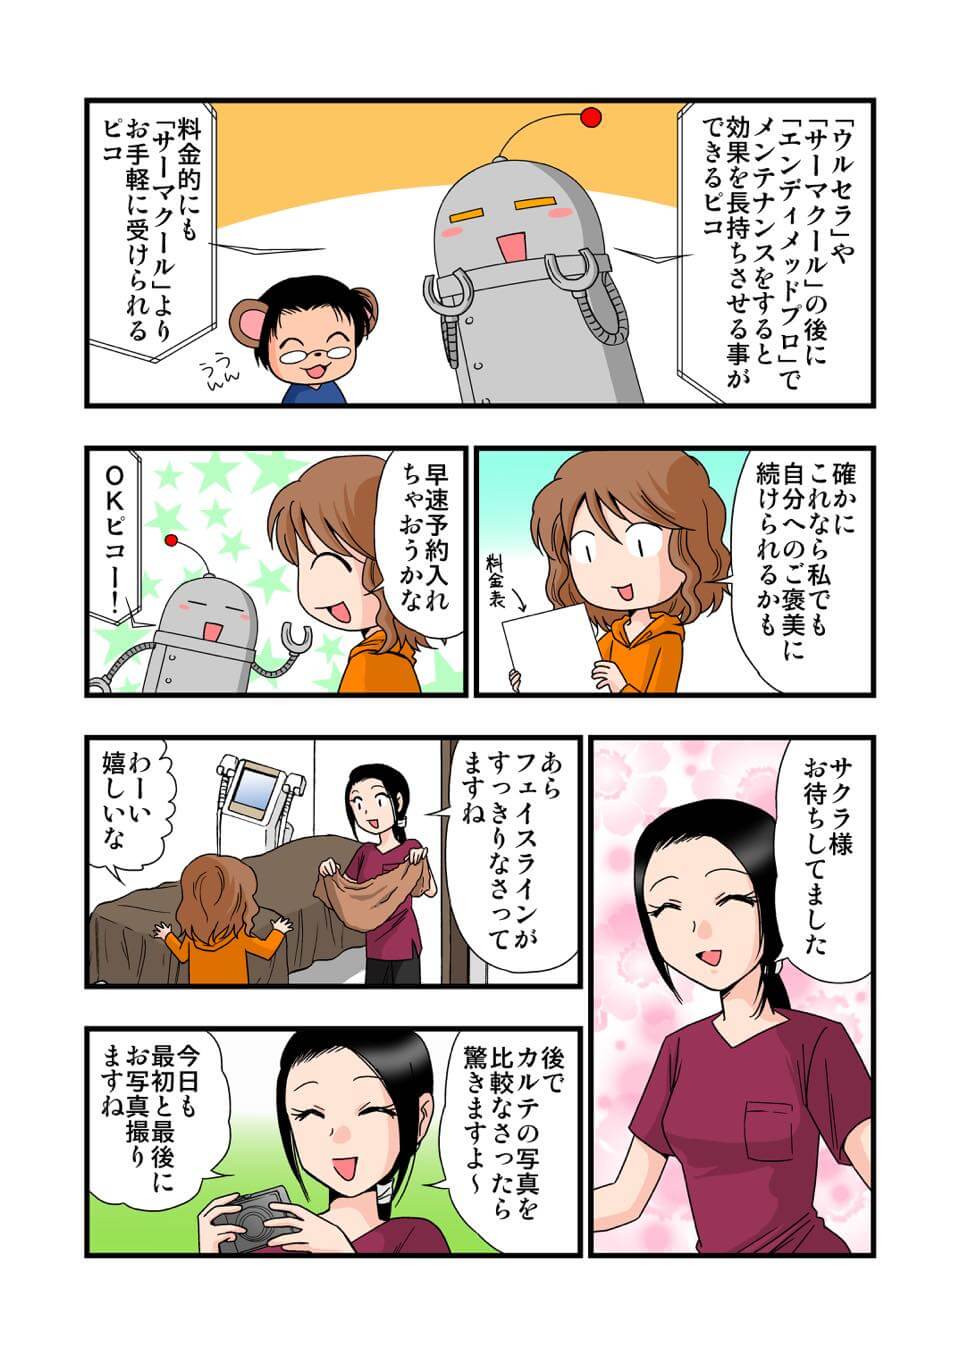 東京美容皮膚科クリニック公式漫画 6P